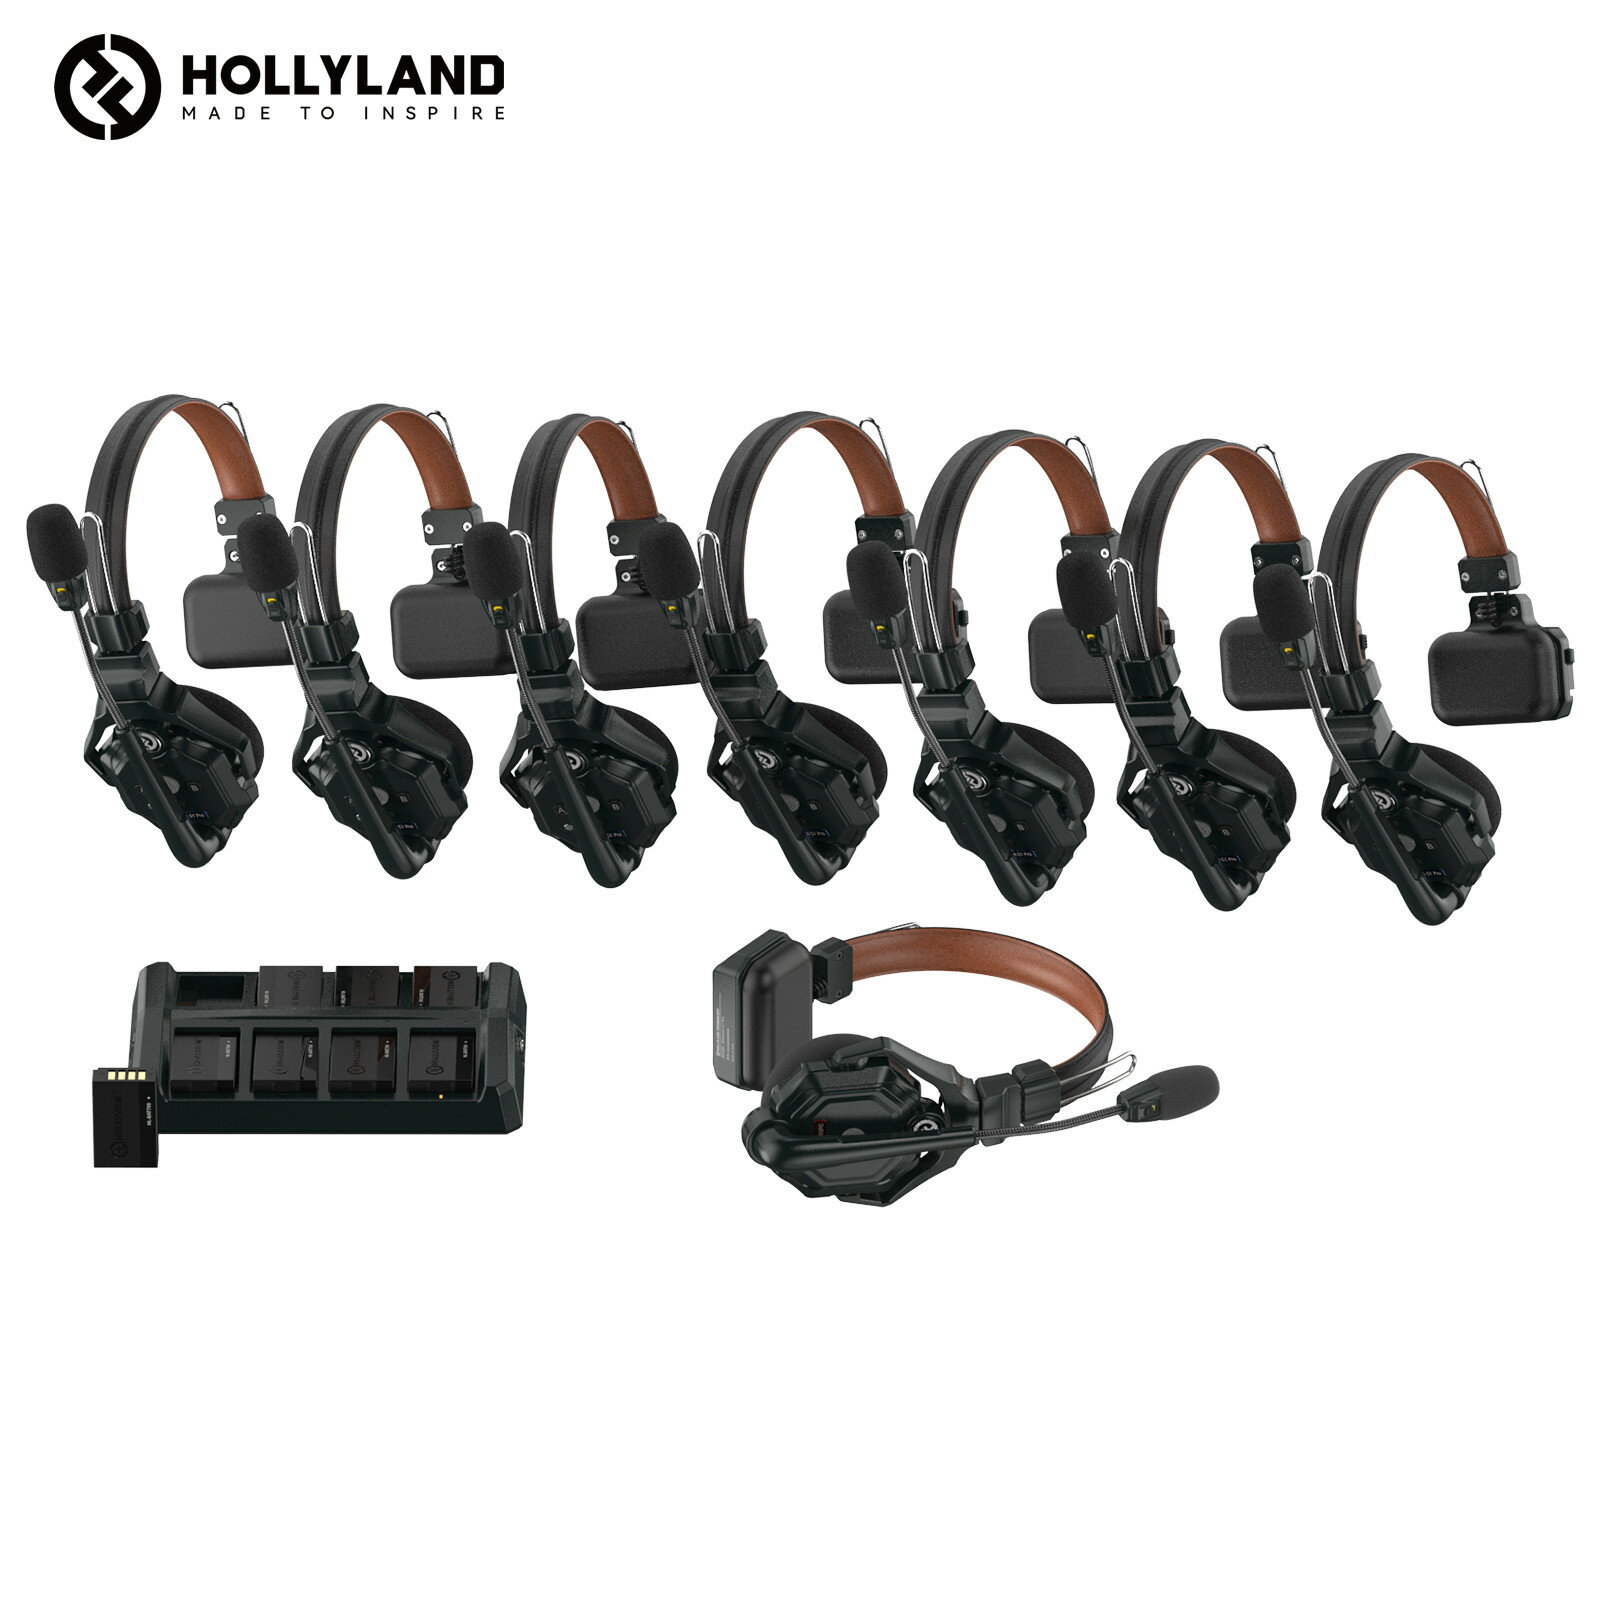 Hollyland Solidcom C1 Pro-8S ワイヤレスインカム 8台セット ノイズ キャンセリング・PTT・ミュート機能付き 全二重 通話範囲350m 親機x1子機x7 子機も増設可能 小型軽量ヘッドセット 設定不要 箱から出してすぐに使える同時通話システム